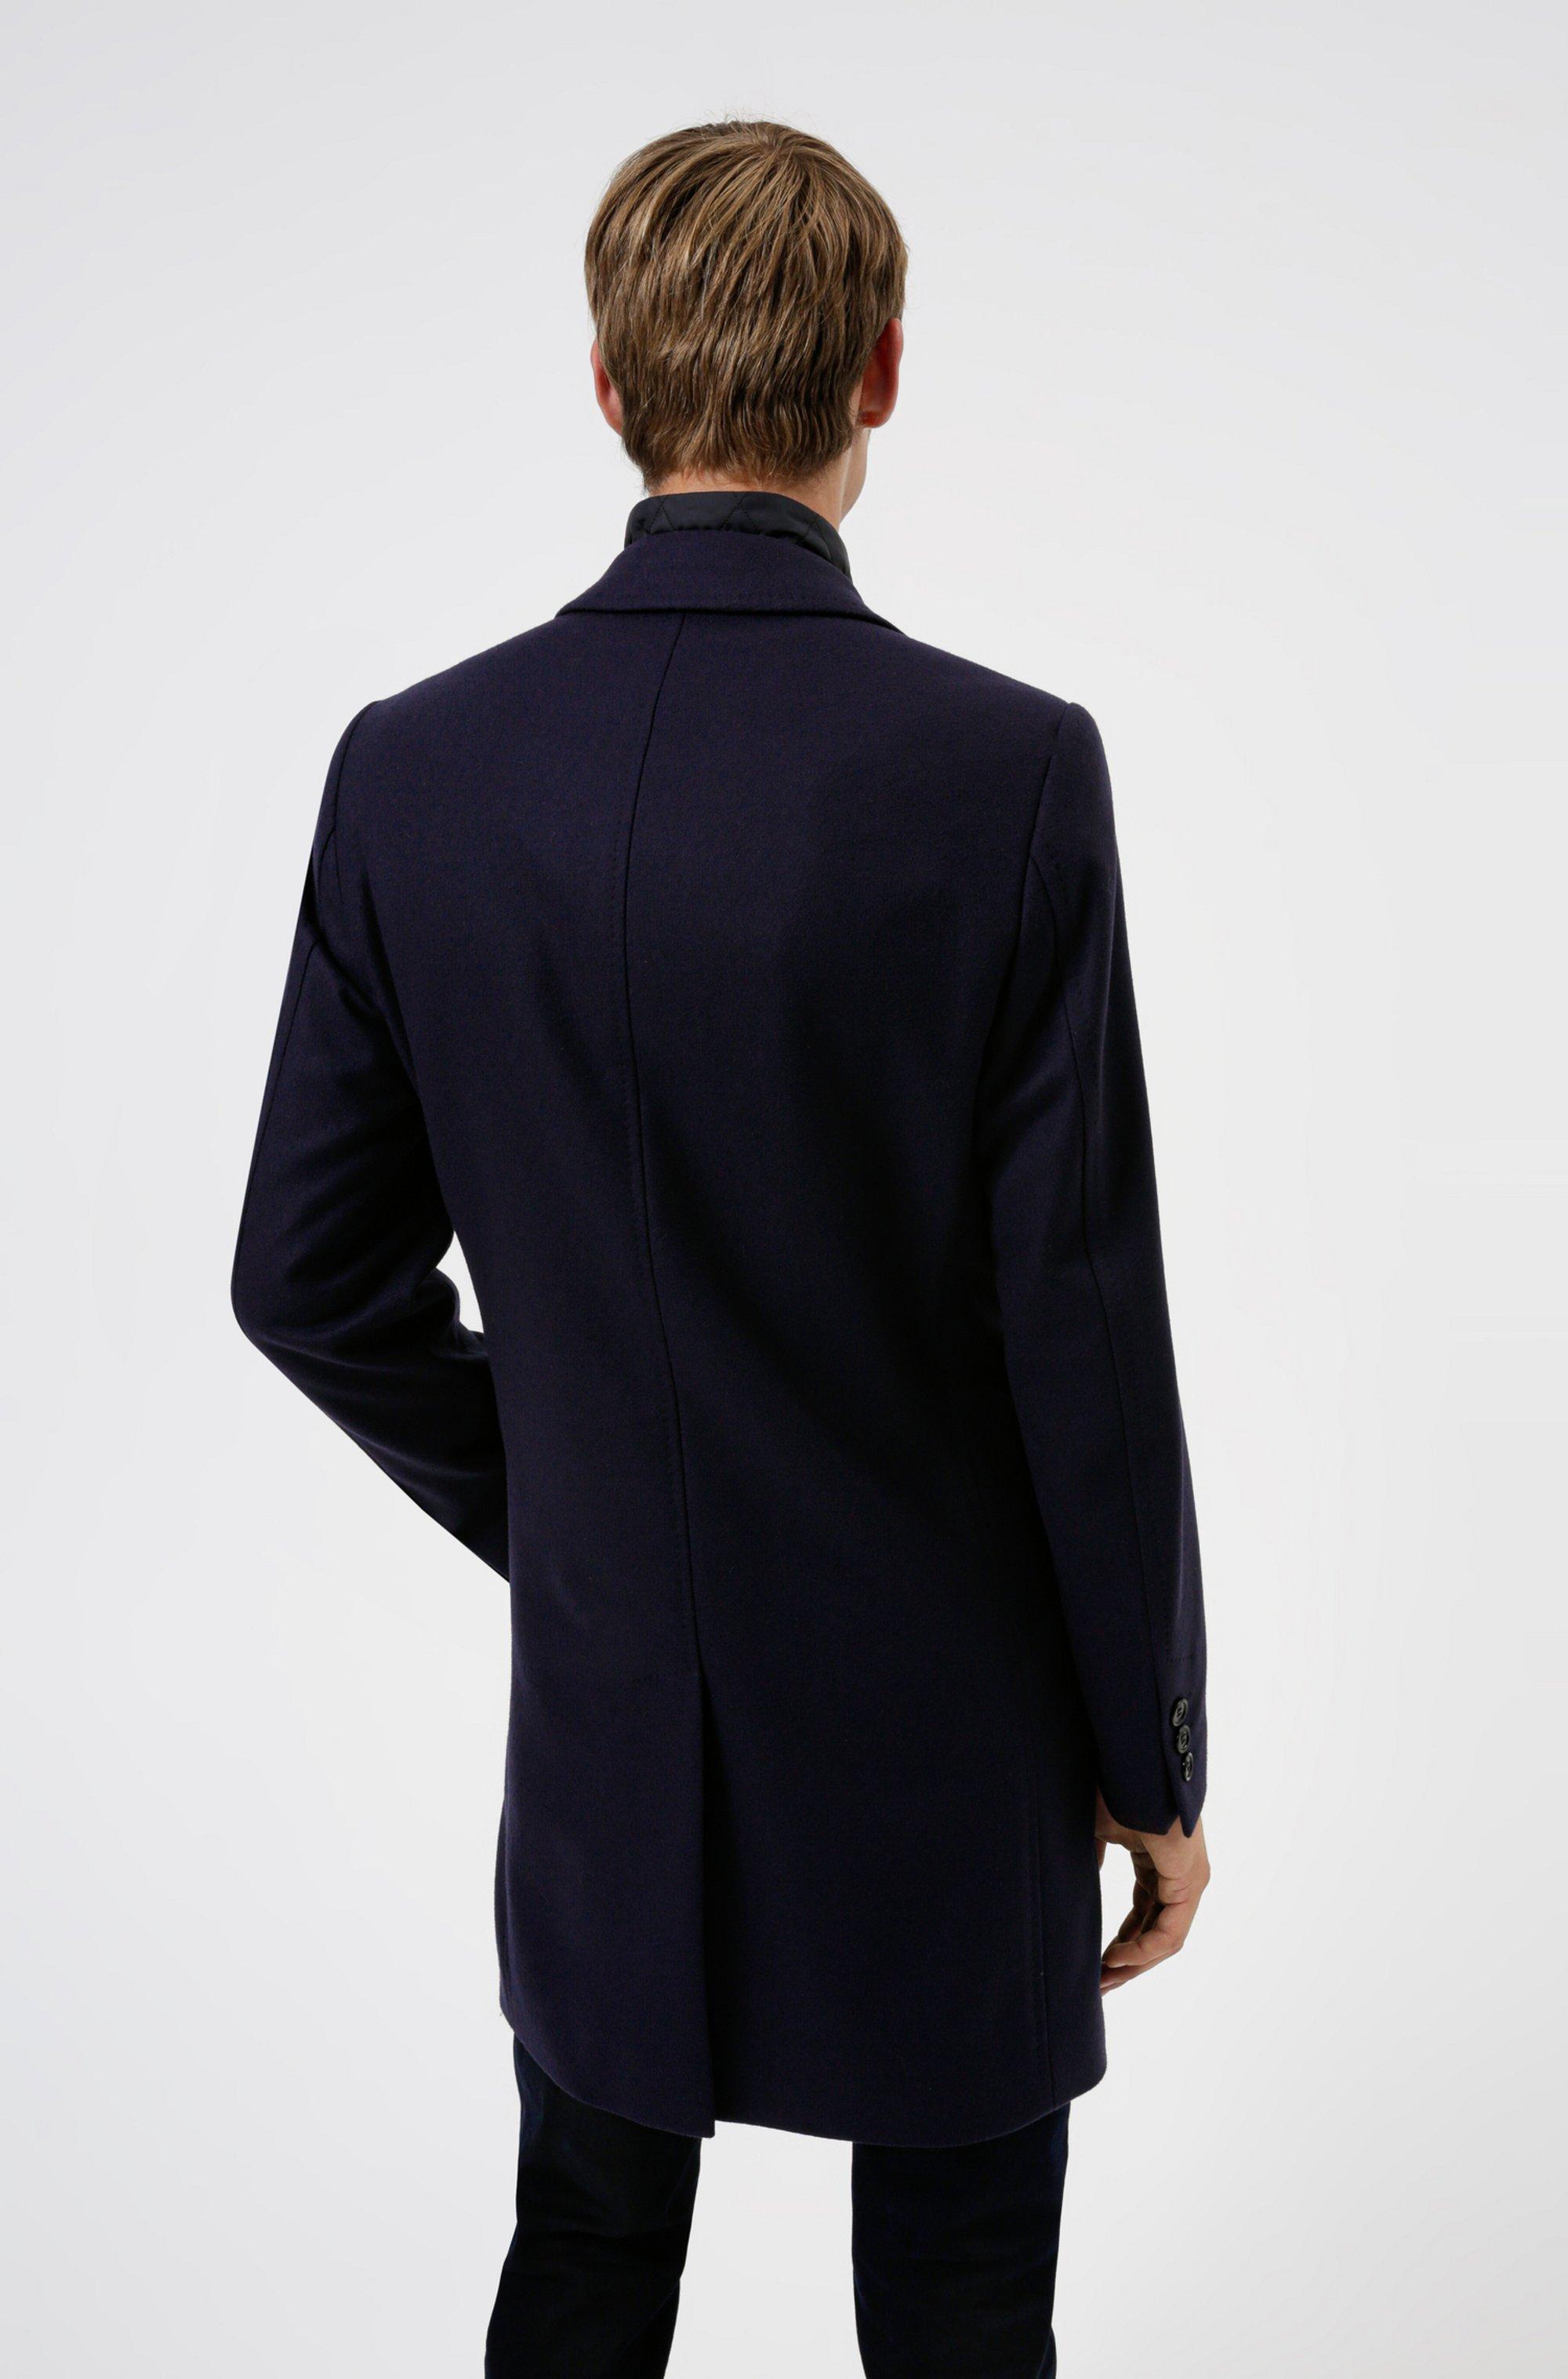 BOSS by HUGO BOSS Wool Blend Coat With Zip Up Inner in Dark Blue (Blue) for  Men - Lyst